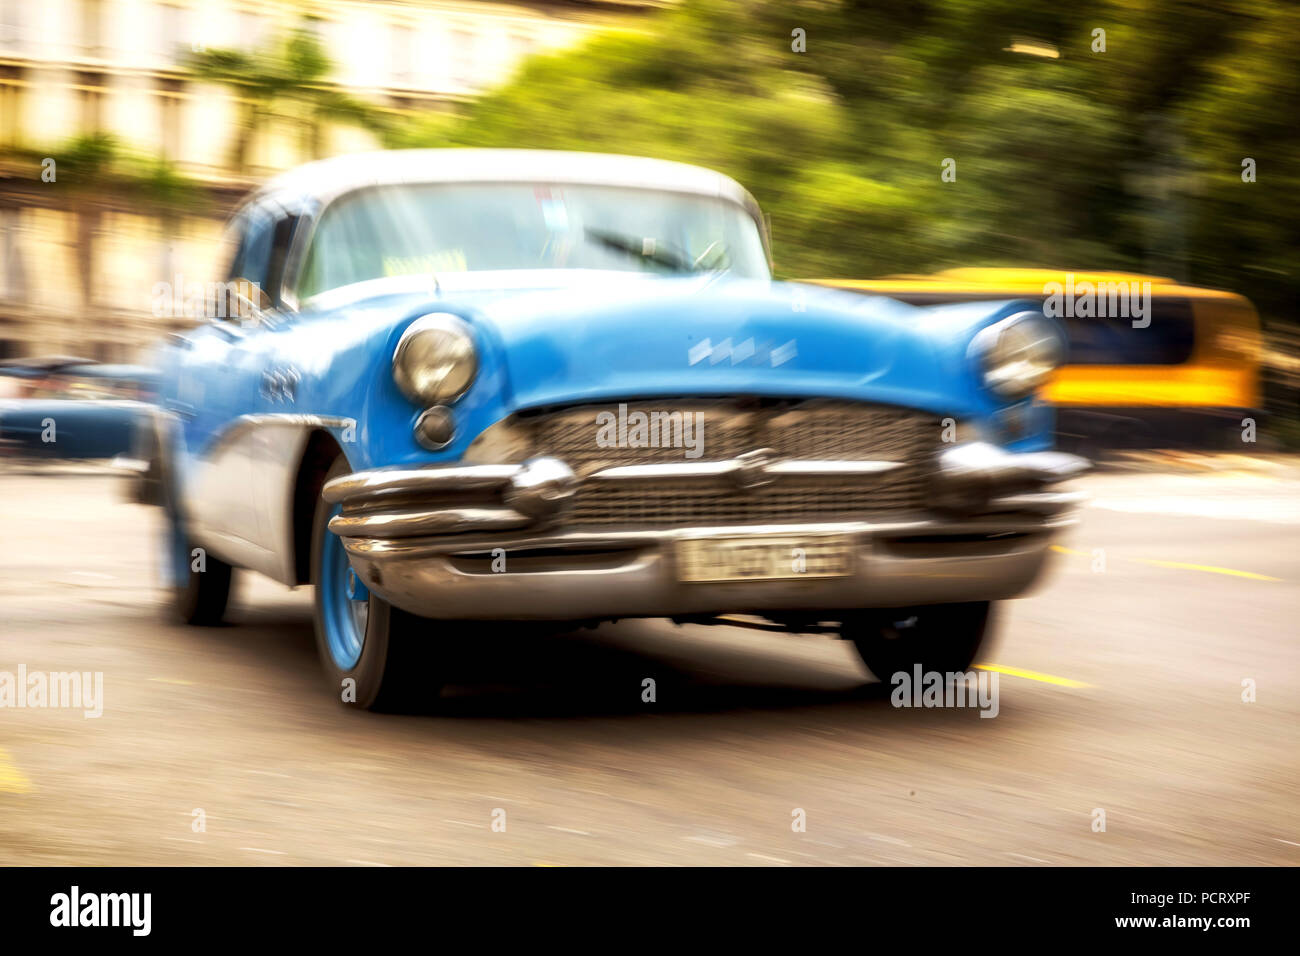 Velocità, offuscata, alla guida di auto vecchia, blu classic car nella scena di strada, Old American road cruiser sulle strade di l'Avana, taxi, La Habana, Havana, La Habana, Cuba, Cuba Foto Stock